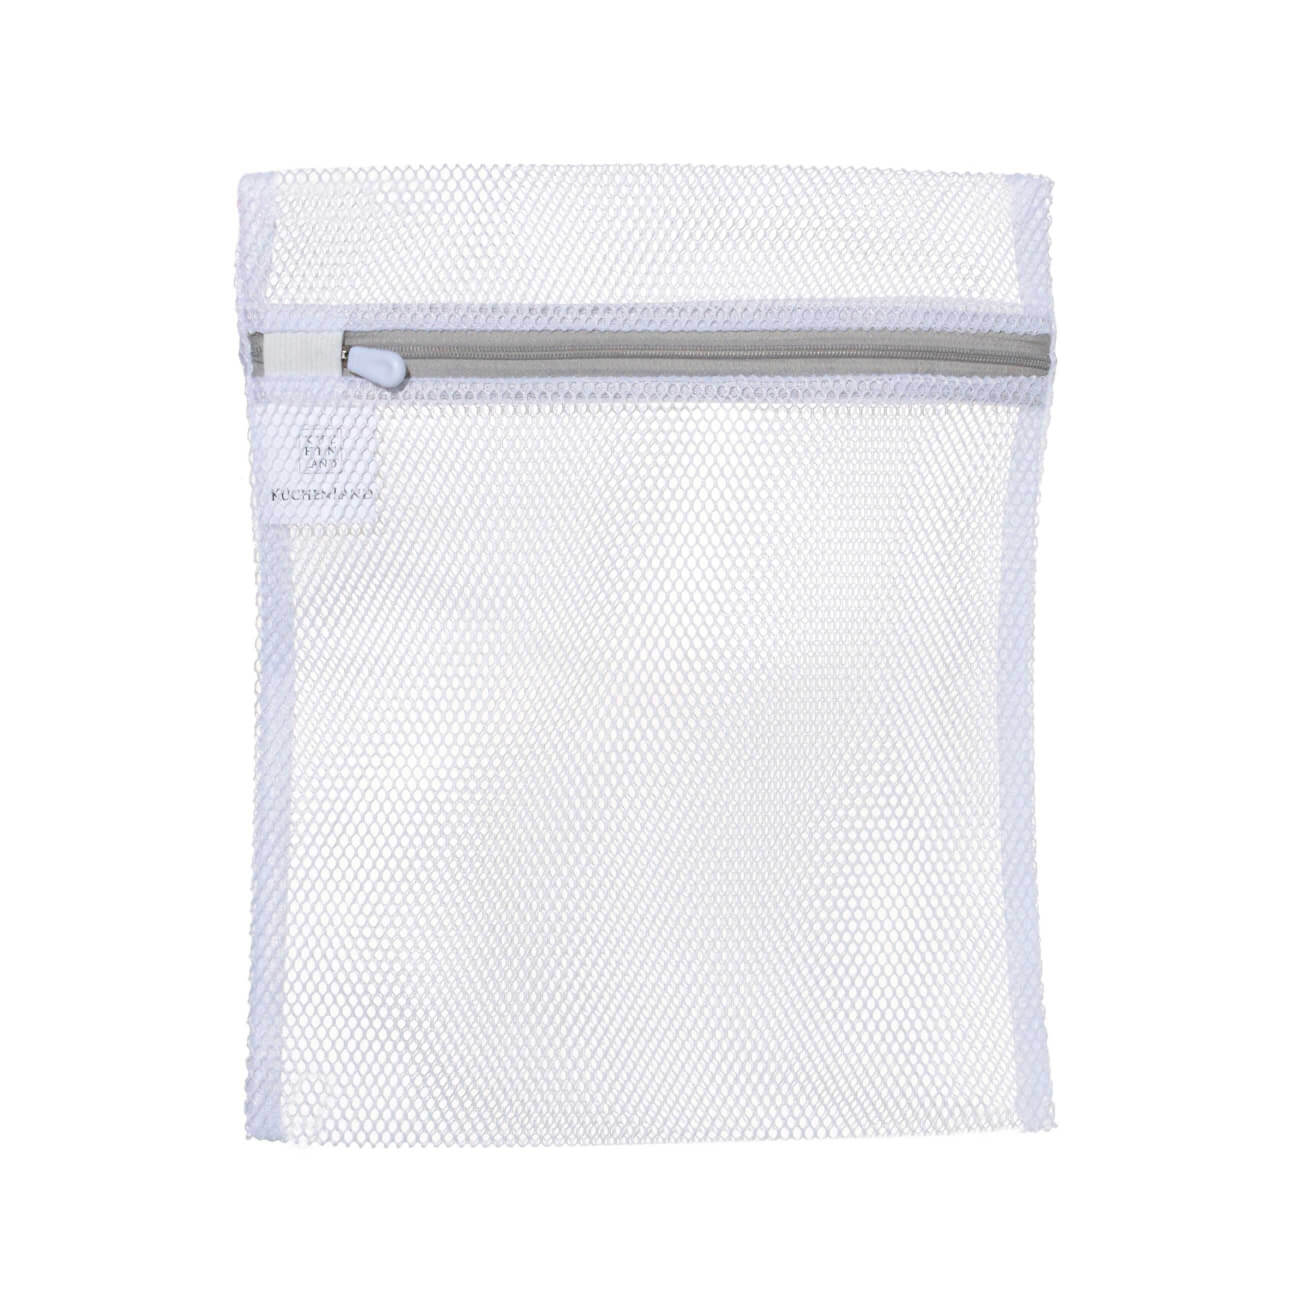 Мешок для стирки нижнего белья, 25х30 см, полиэстер, бело-серый, Safety мешок для стирки нижнего белья 38 см полиэстер safety plus